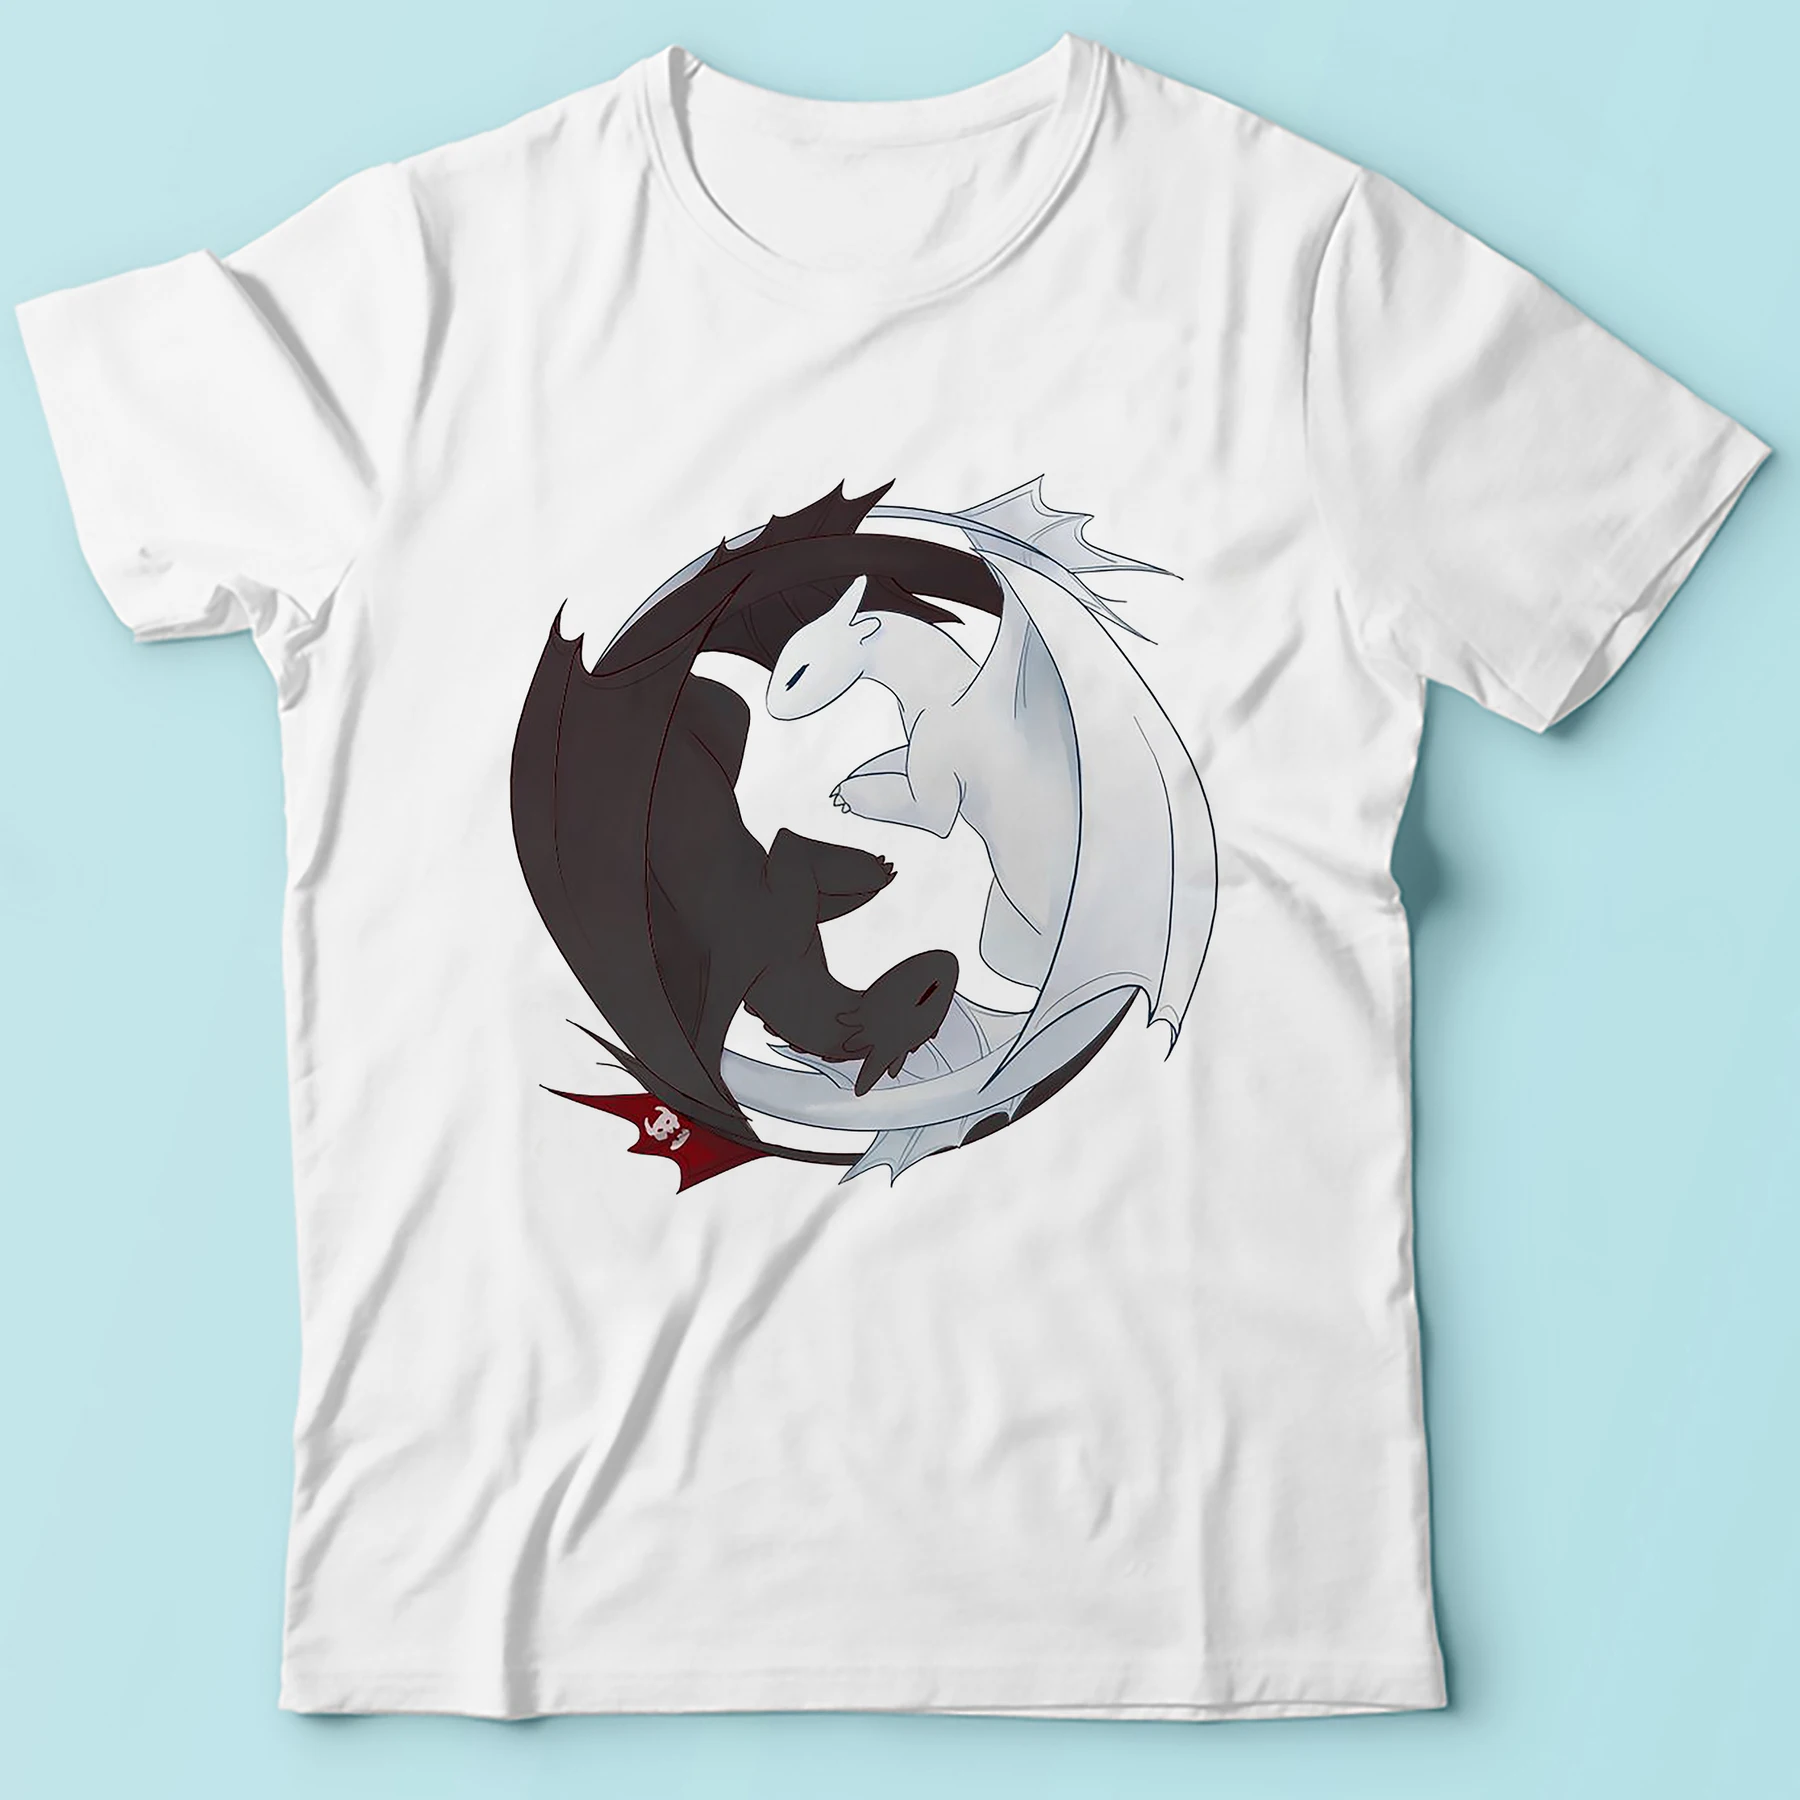 Забавная Мужская футболка с аниме Как приручить дракона летняя новая белая